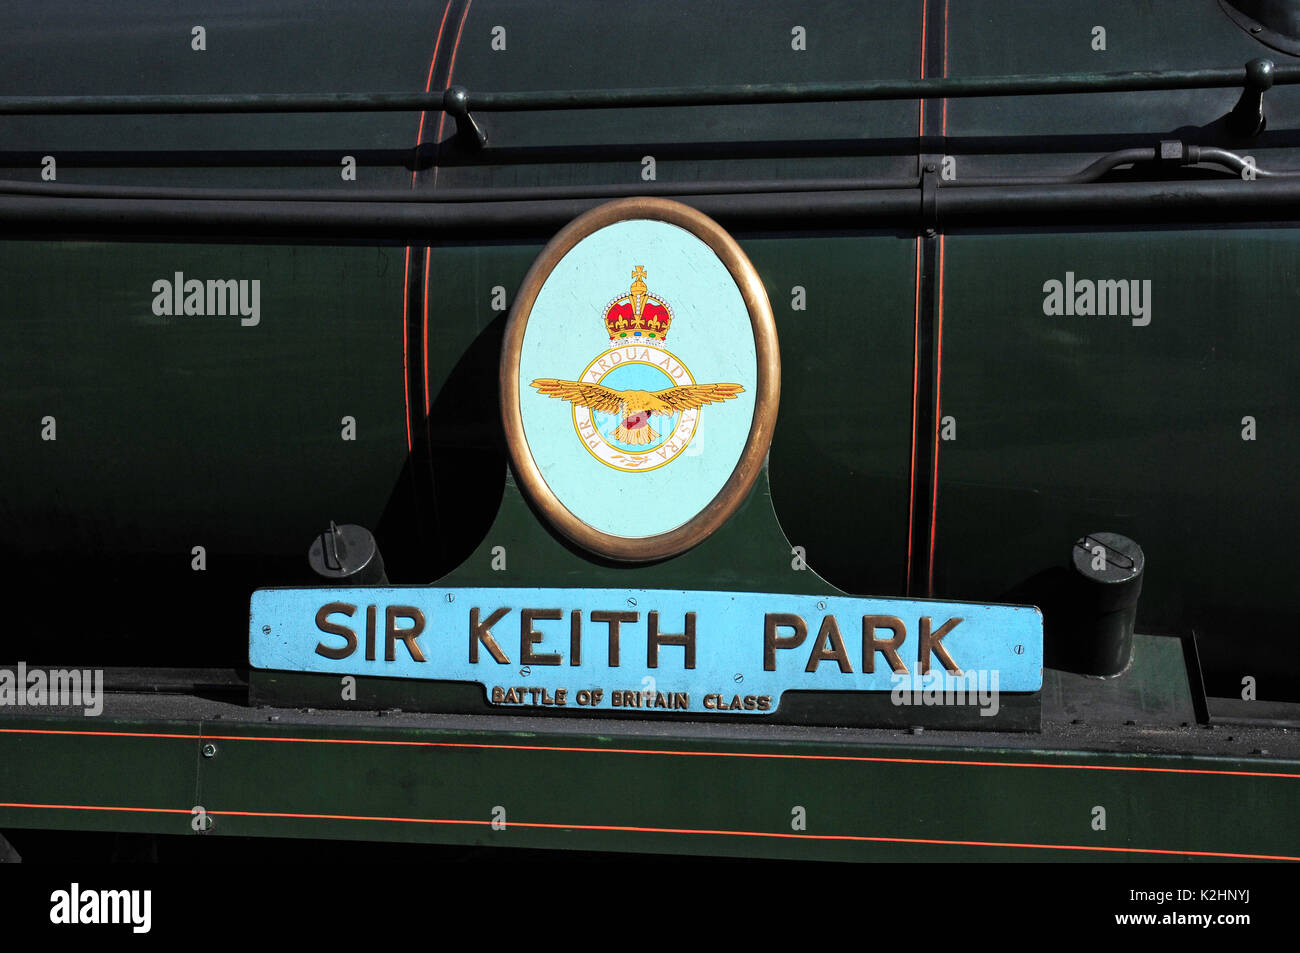 Abzeichen auf der Seite einer Schlacht von Großbritannien Klasse Lokomotive. Die Severn Valley Railway, Shropshire. Stockfoto